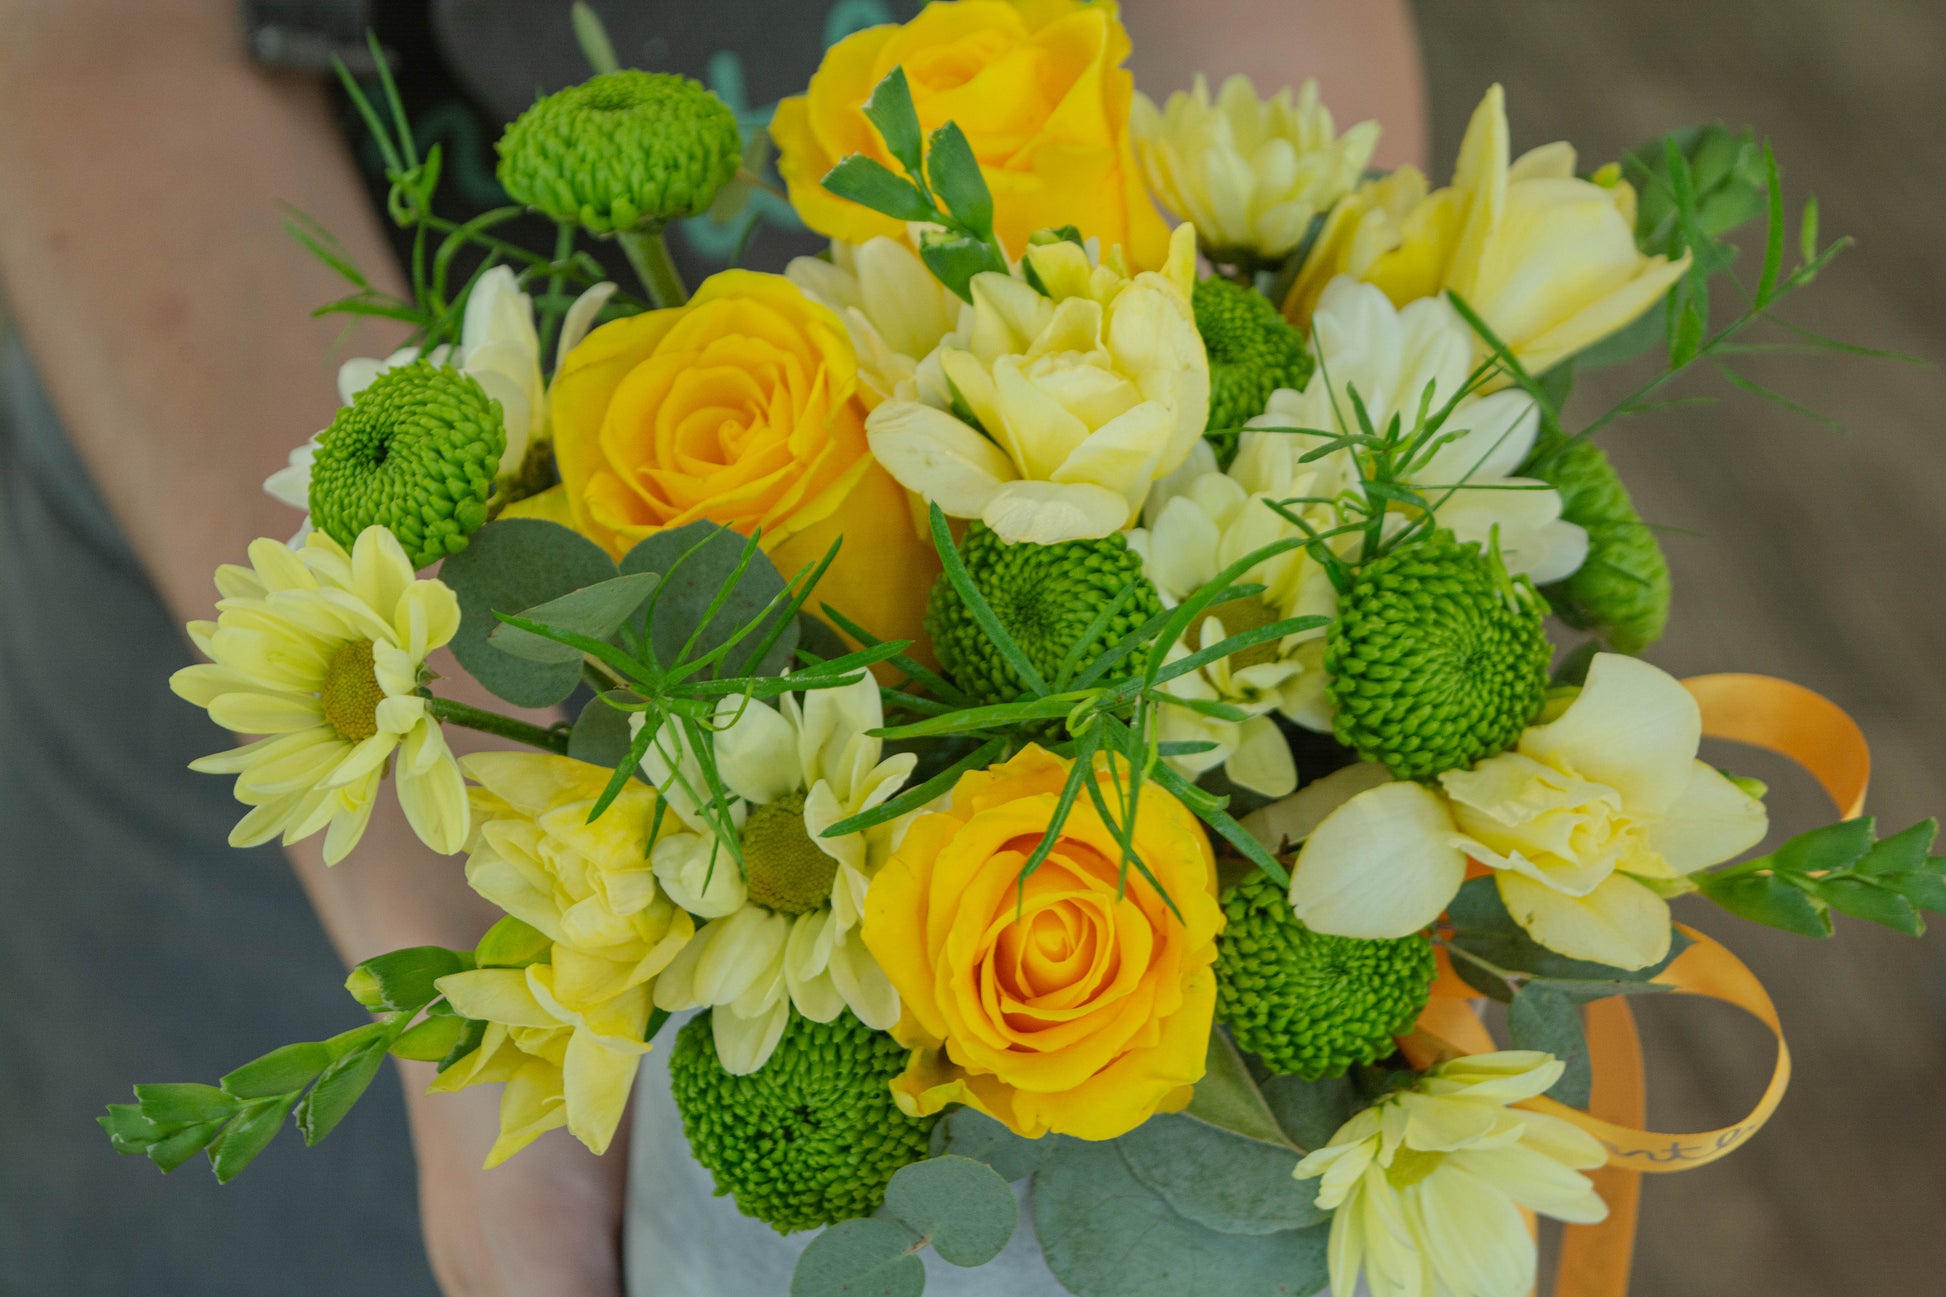 Detaliu cutie cu flori galbene și verzi - aranjament floral de vară - livrare flori în Reșița